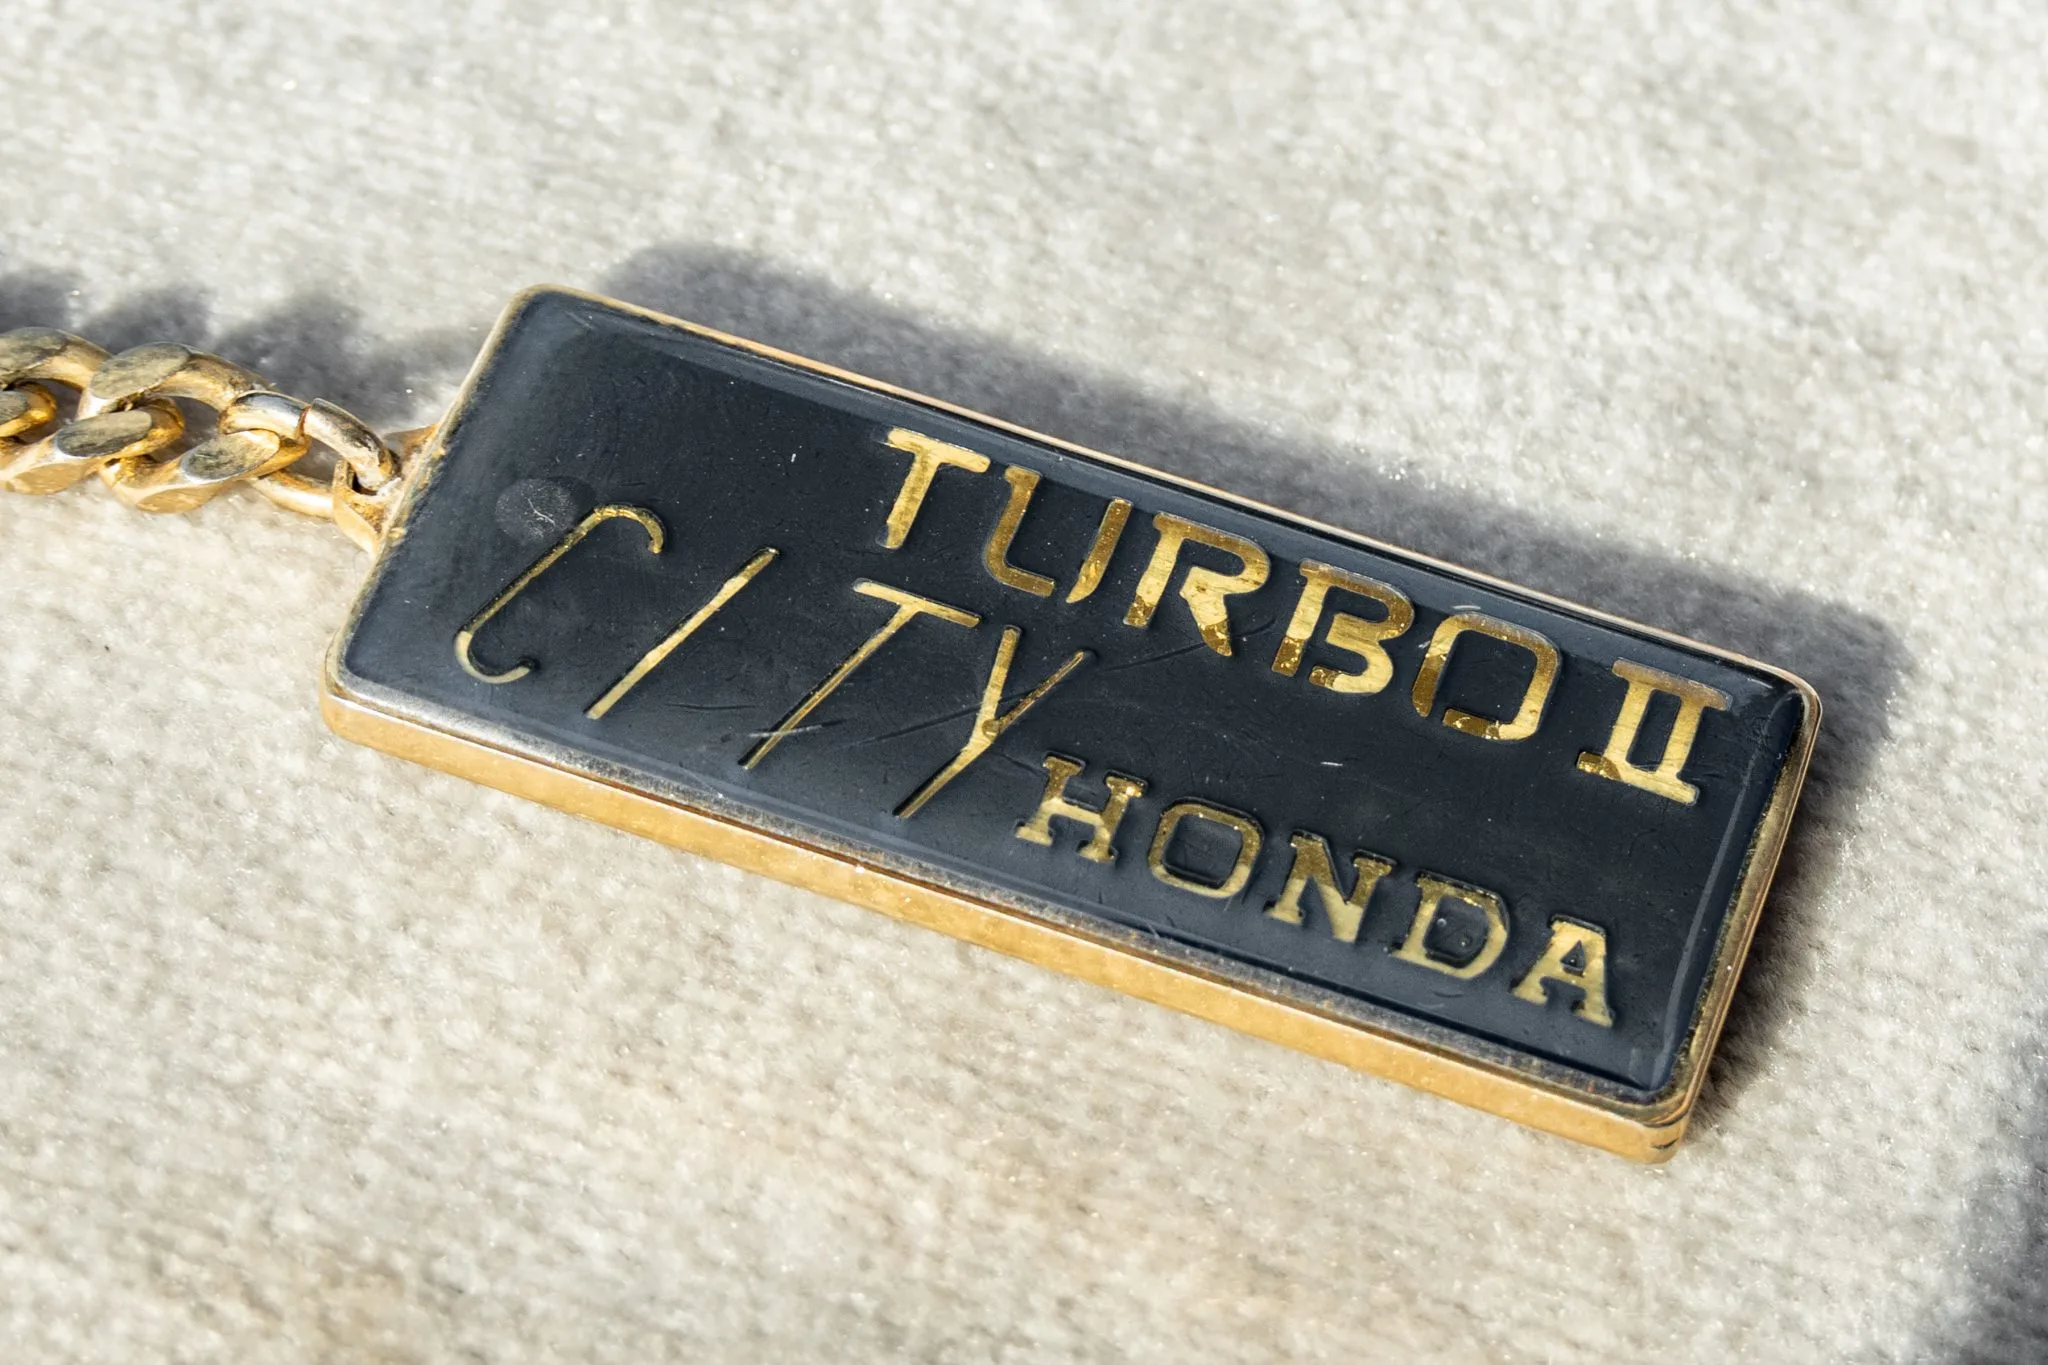 1981_honda_city-turbo-ii-with-motocompo_1981_honda_city-turbo-ii-with-motocompo_63863808-e36a-4335-8cb9-e558c9063536-pUk8a0-scaled.png